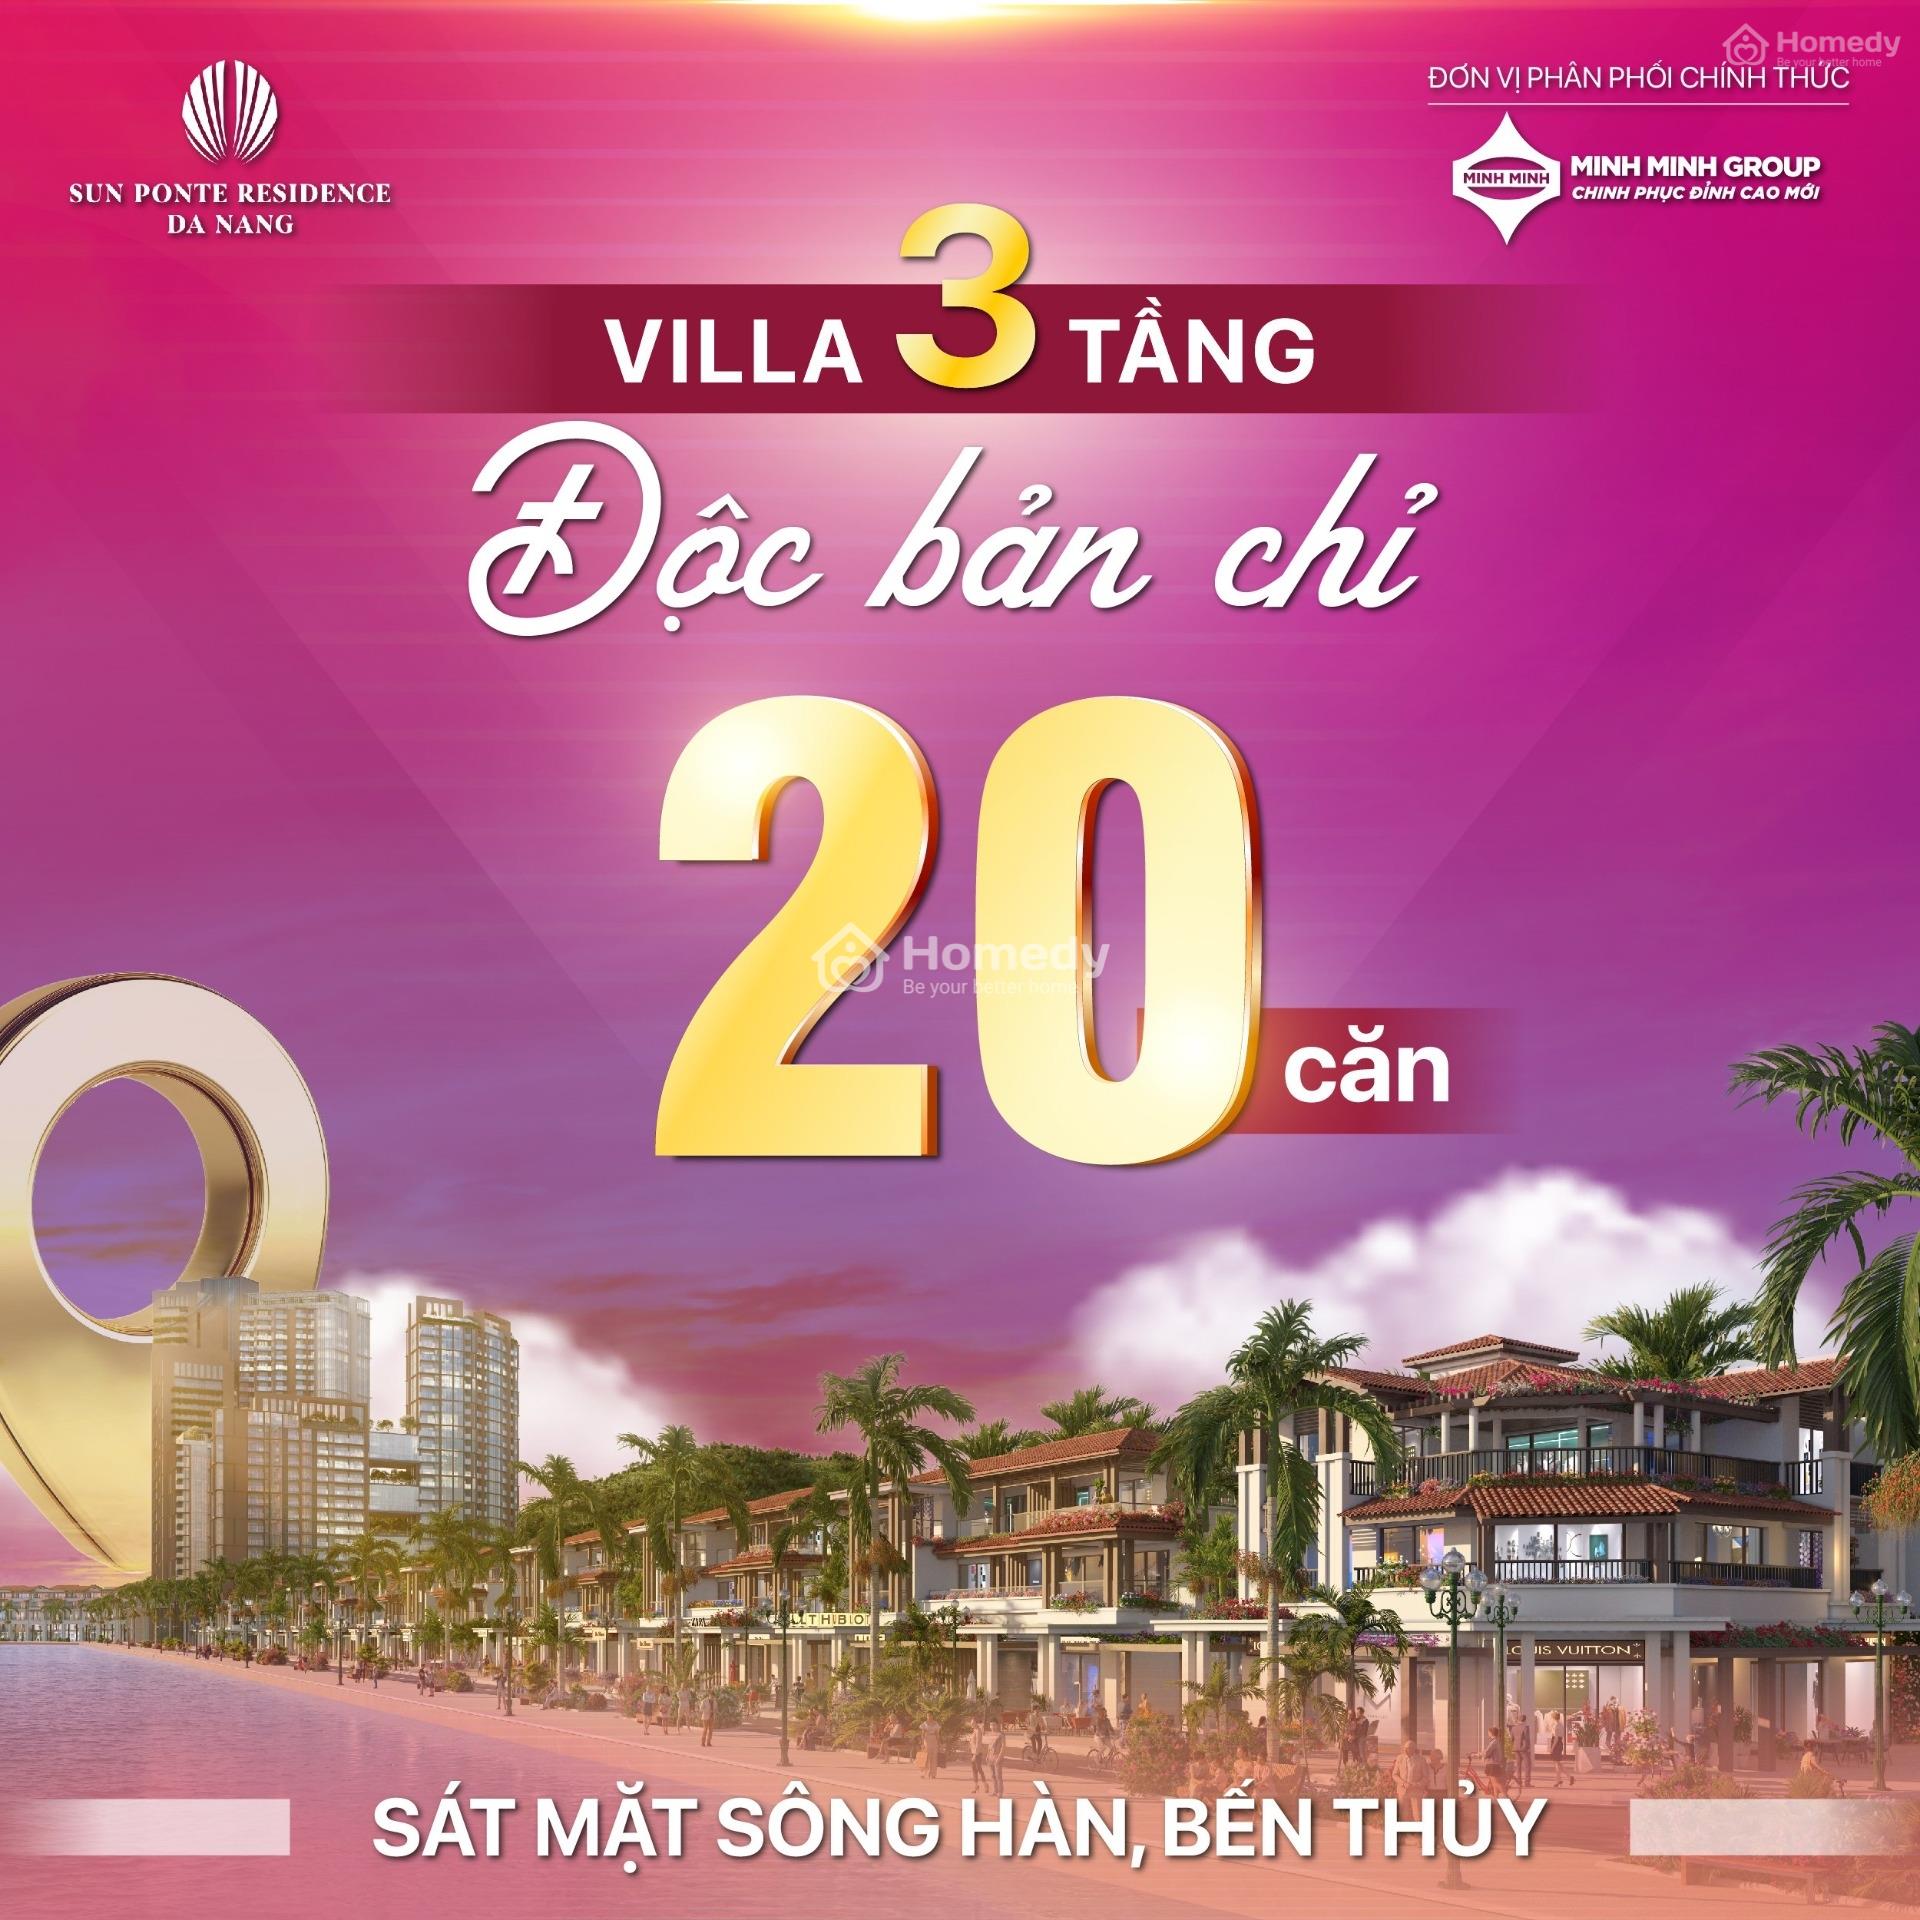 Mở Bán Giai Đoạn 1 Shophouse - Villa -Towhouse Sun Symphony Residence Đà Nẵng - Lh 0905.518.***